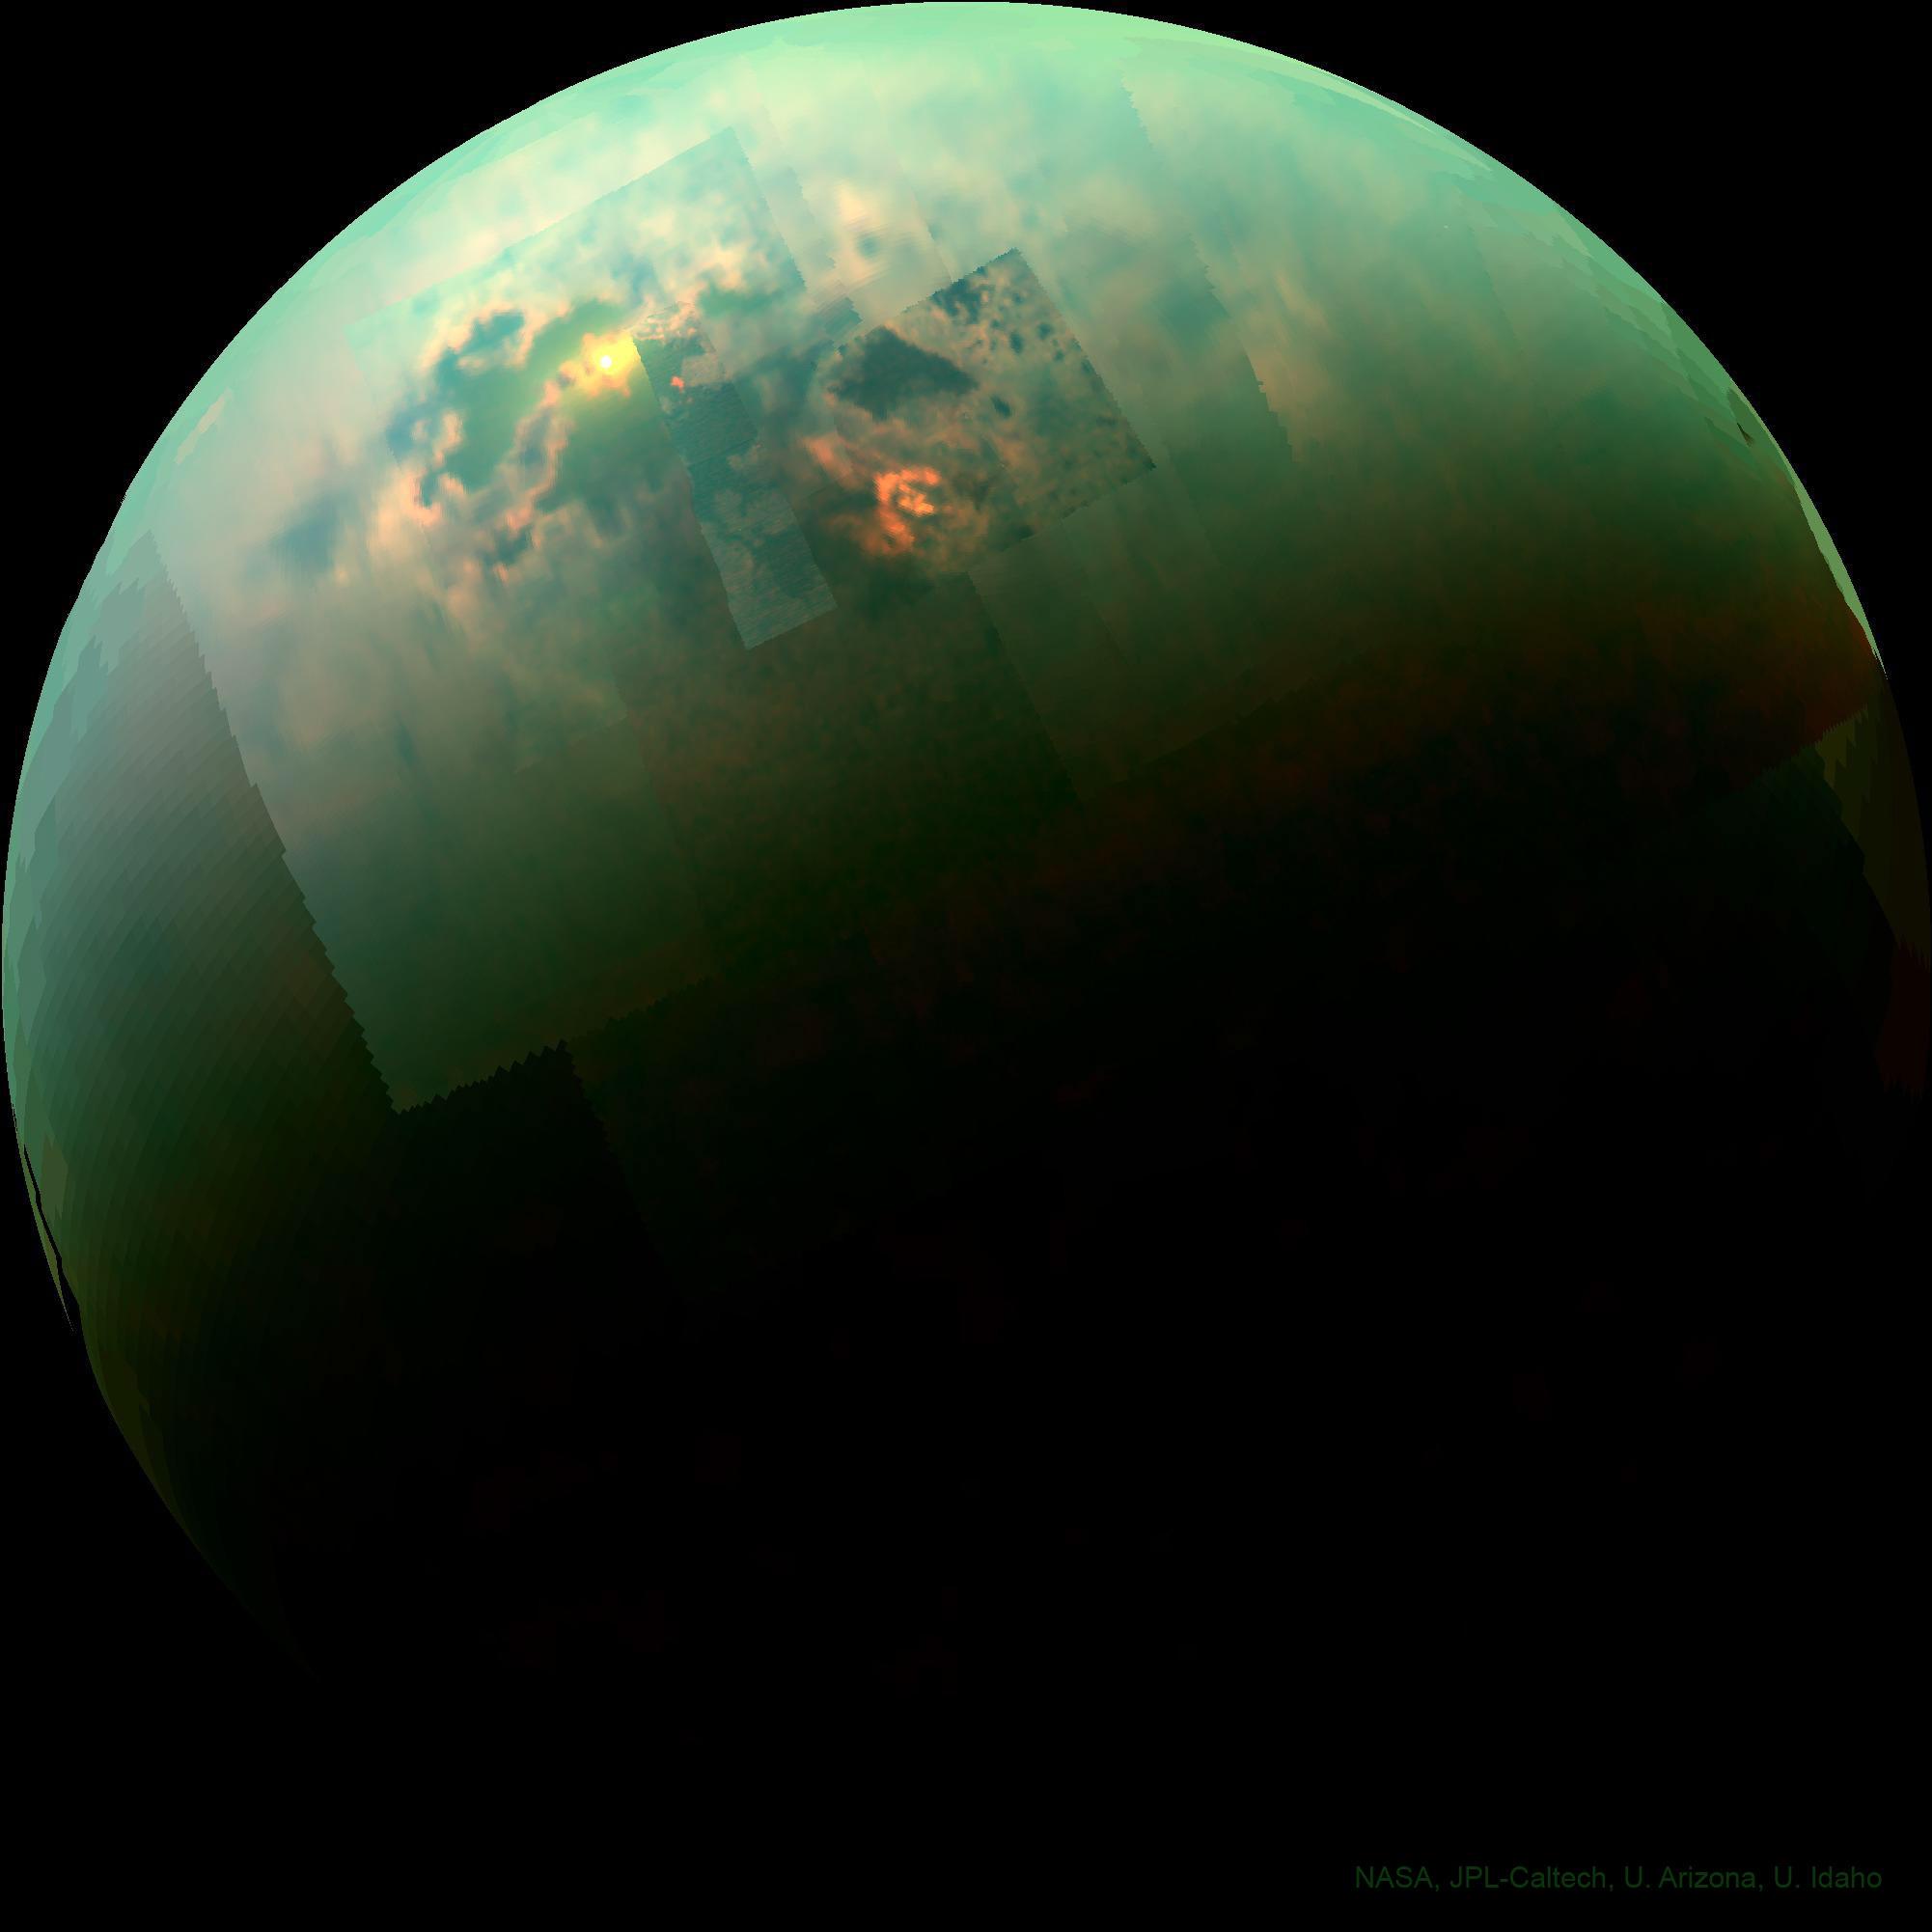 تَيتان يظهر كنصف قمر بلون مخضرّ تعلوه السحب وتحتها ما يشبه البحار التي تعكس الشمس كما المرآة